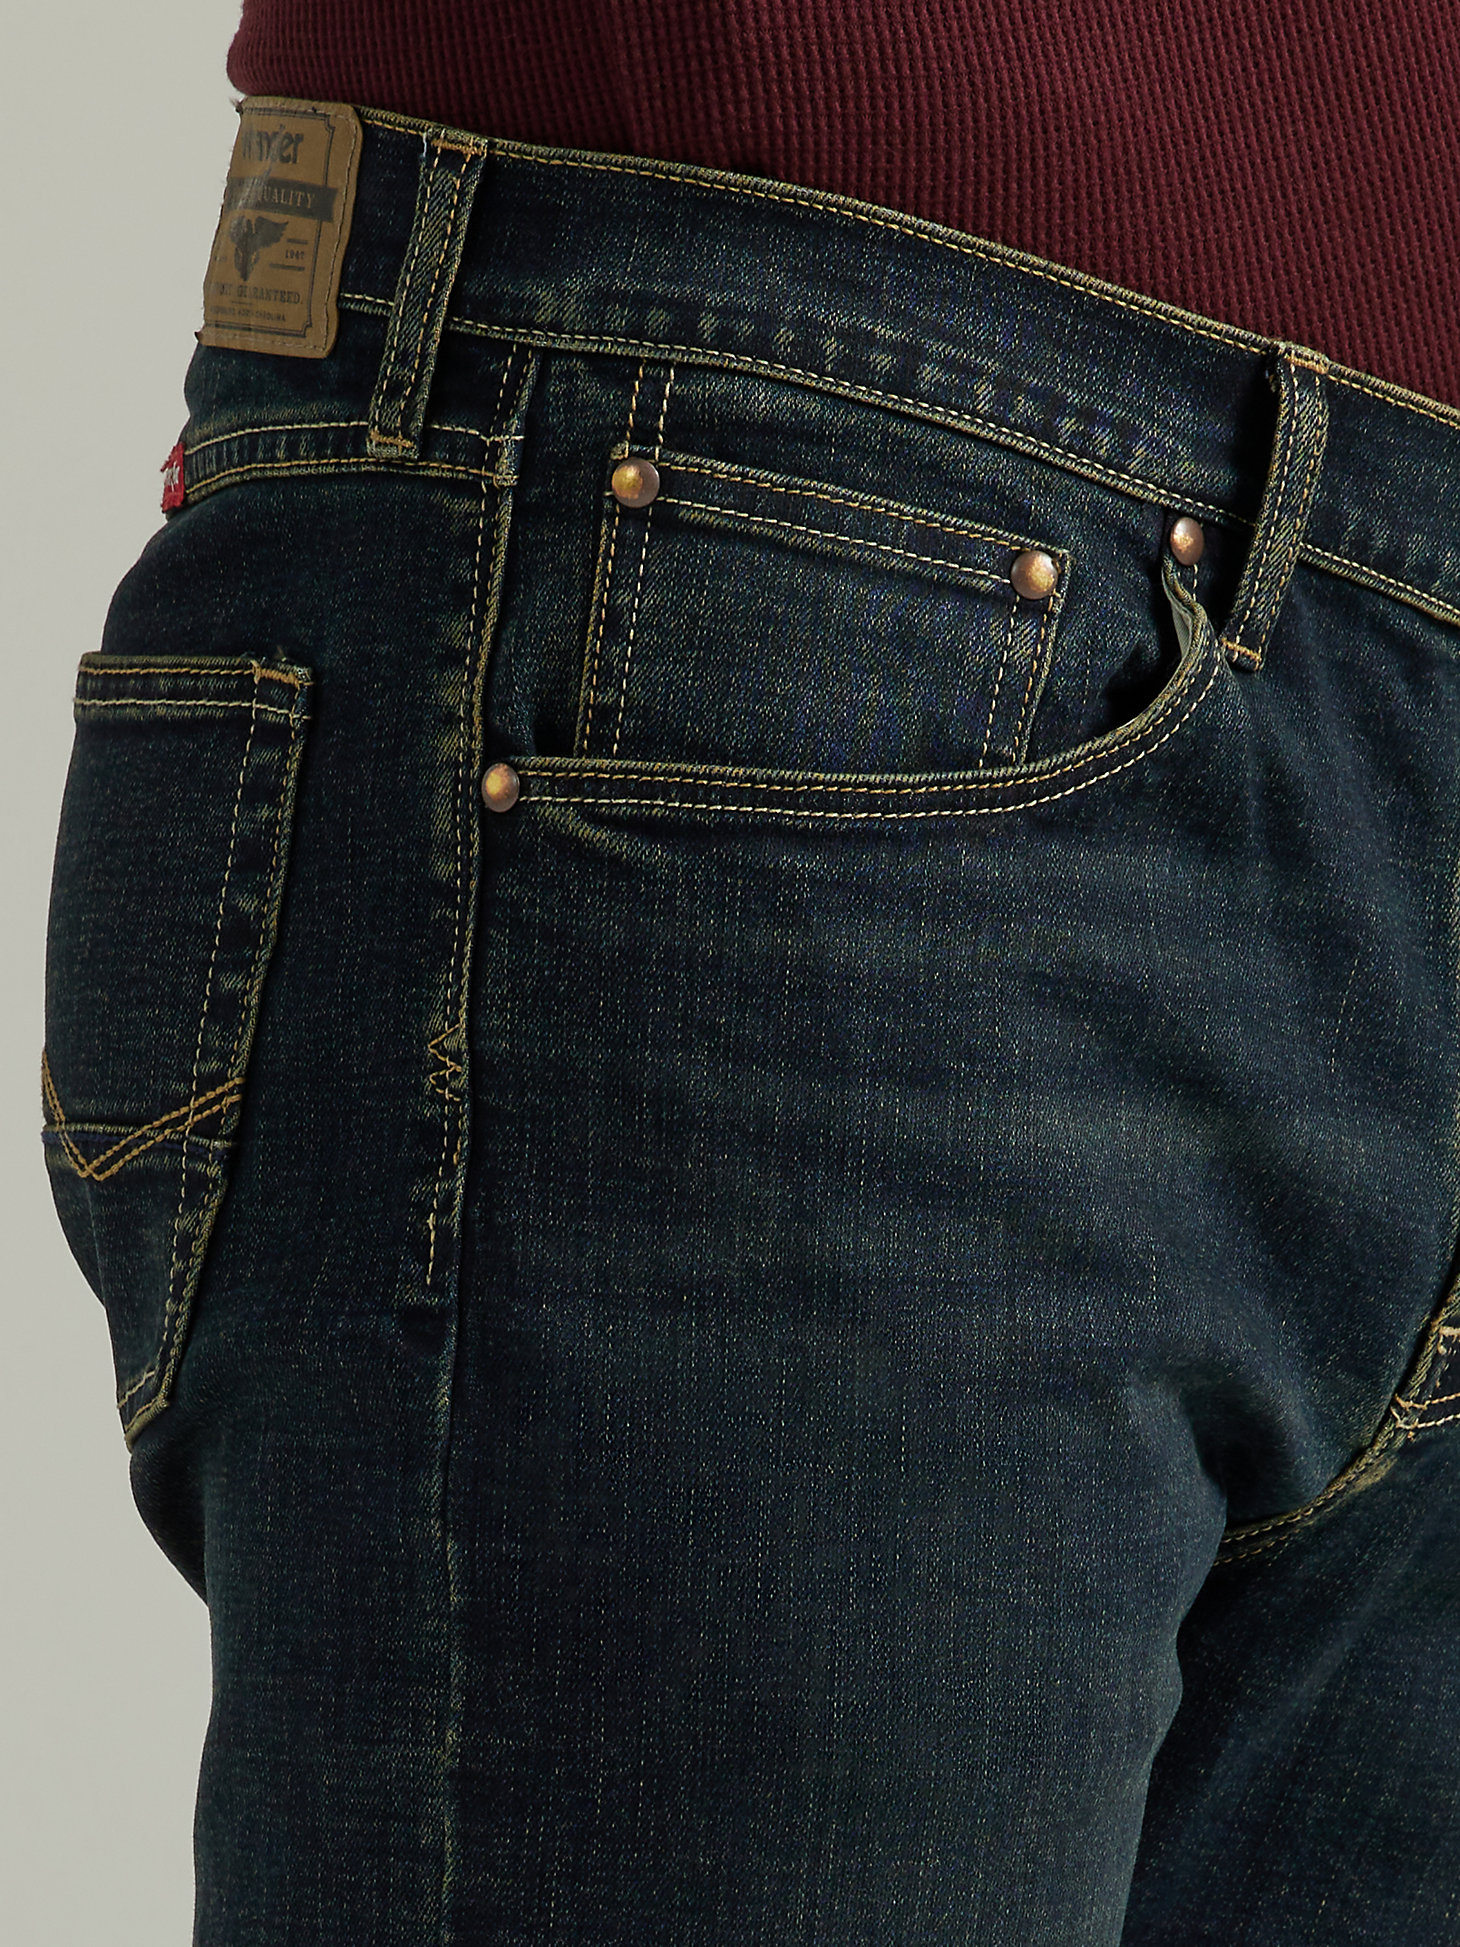 Men's Five Star Premium Slim Straight Jean in Slater alternative view 4